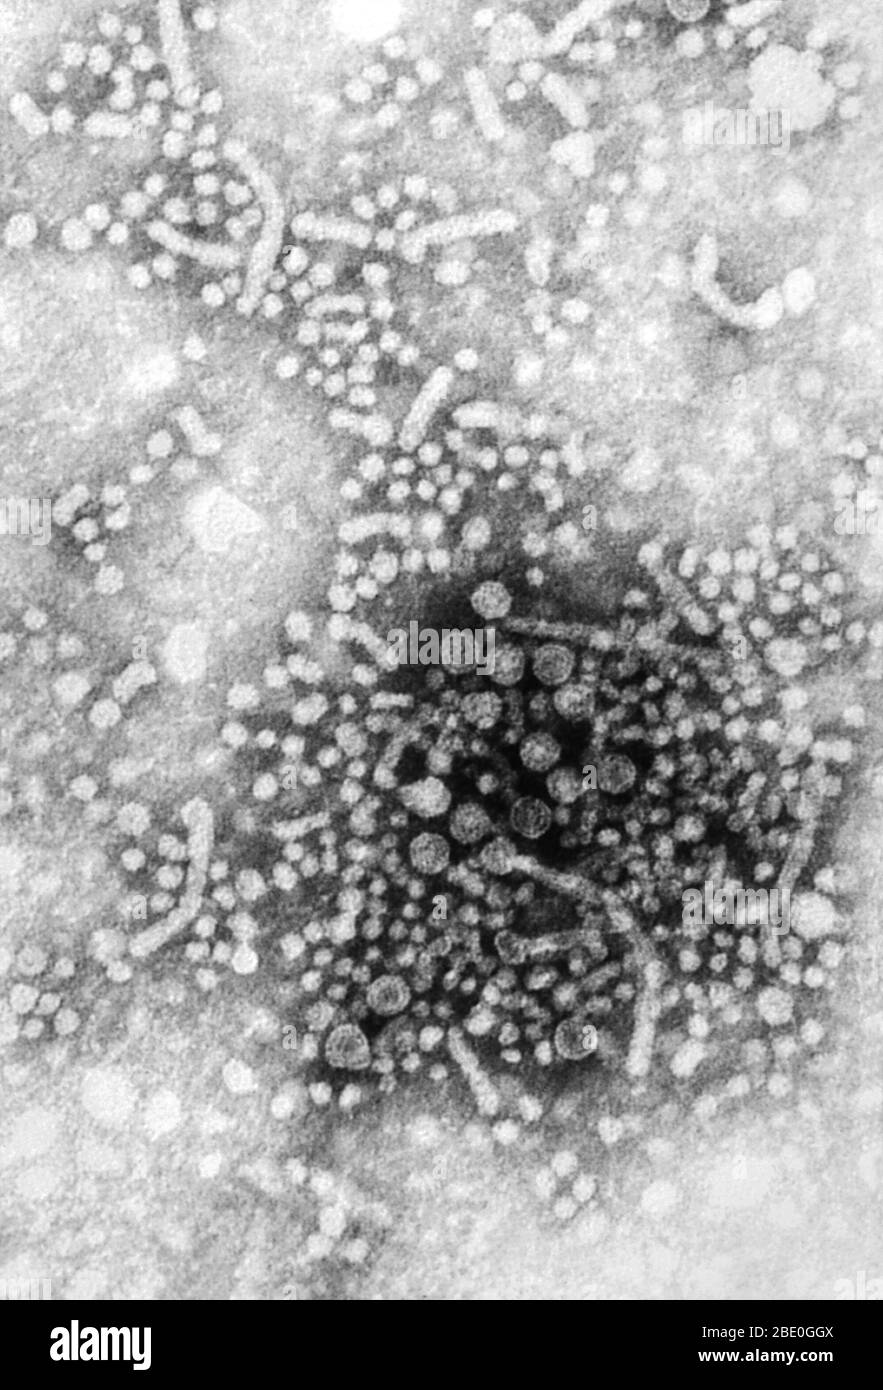 Negativ gefärbte Transmissionselektronenmikrographie (TEM) zahlreicher Hepatitis-B-Virus (HBV)-Virionen, auch als Dane-Partikel bekannt. HBV enthält ein Genom der DNA und ist ein Mitglied der Familie der Viren, die als Hepadnaviridae bekannt sind. Es ist die Ursache einer schweren Krankheit, die die Leber angreift, und eine Infektion, die lebenslang sein kann, wie Leberzirrhose (Narbenbildung), Leberkrebs, Leberversagen und Tod bekannt. Stockfoto